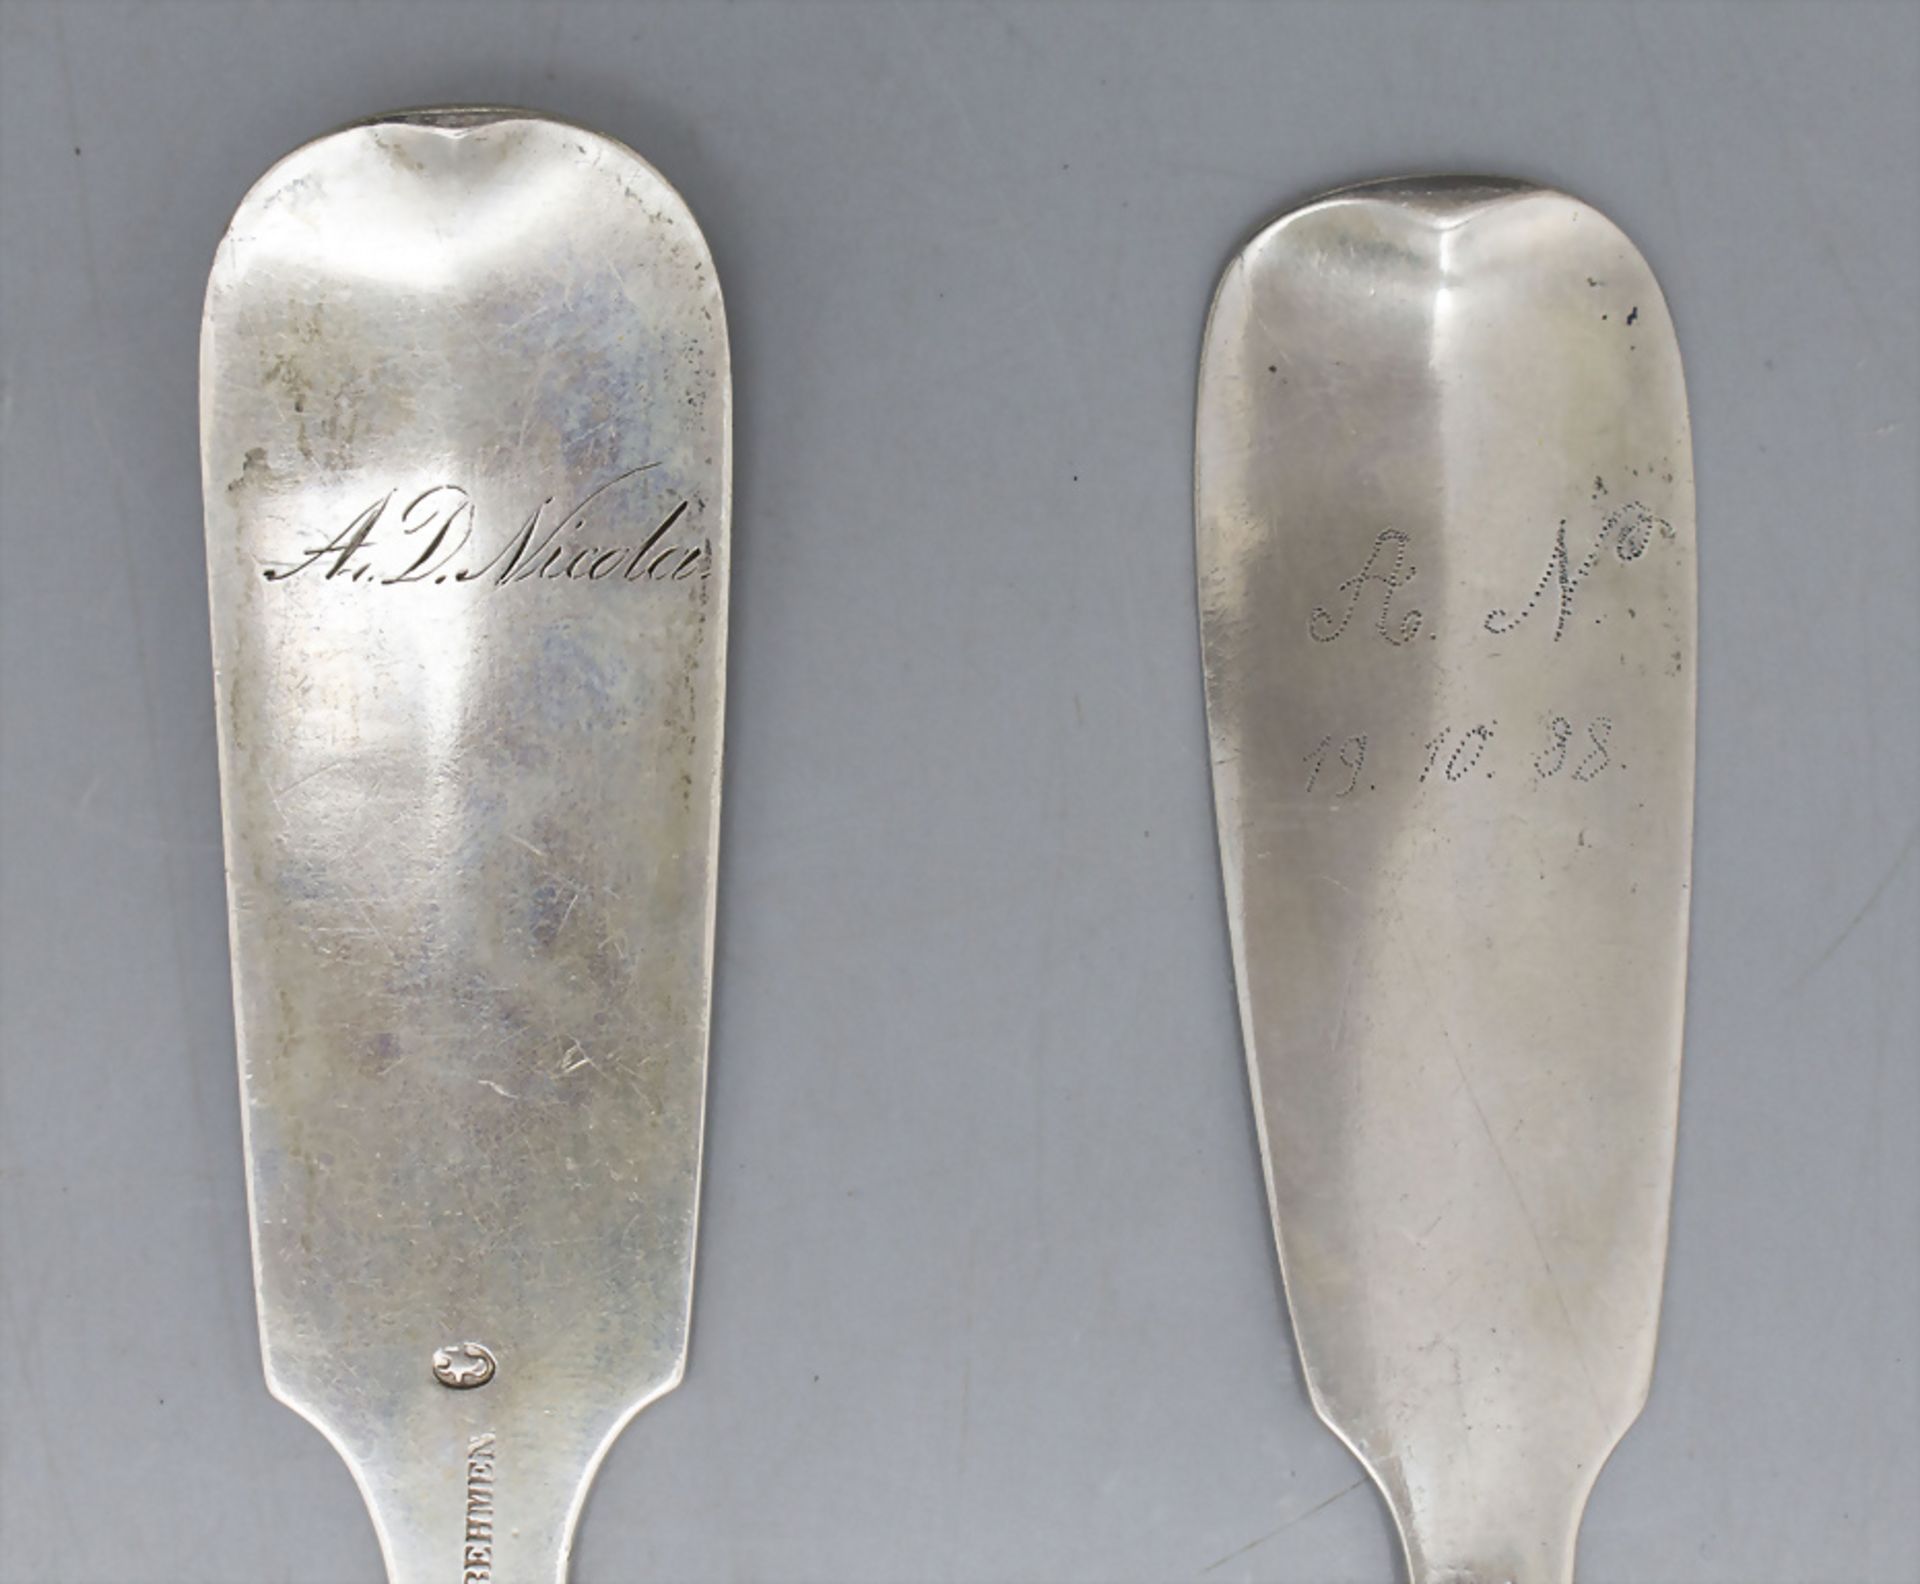 2 Ragout Löffel / 2 Cuillère à ragout en argent massif / 2 large silver serving spoons, A. von ... - Image 3 of 4